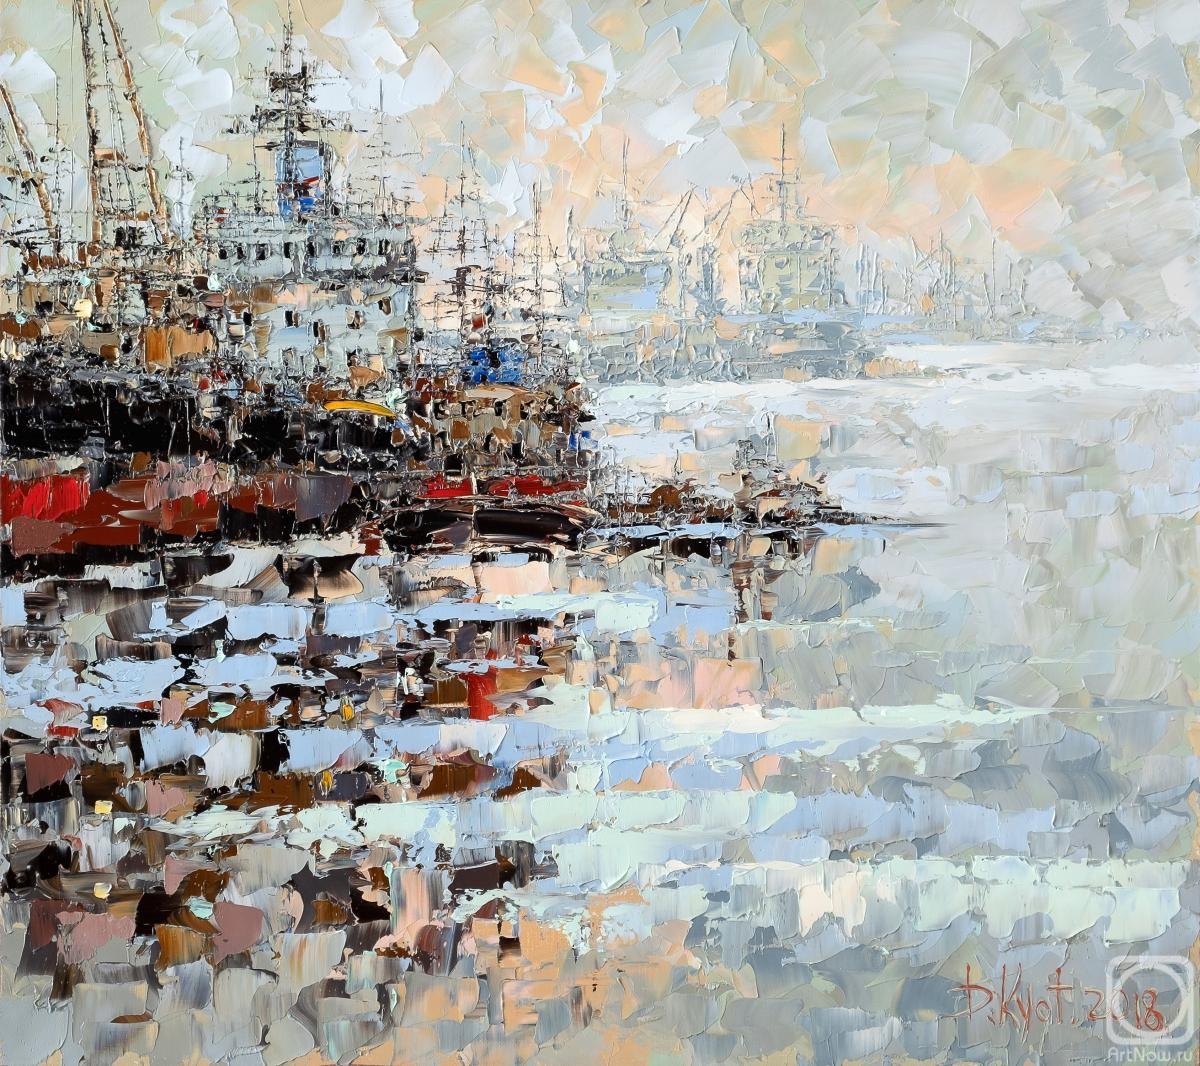 Kustanovich Dmitry. In the port on the Neva in winter